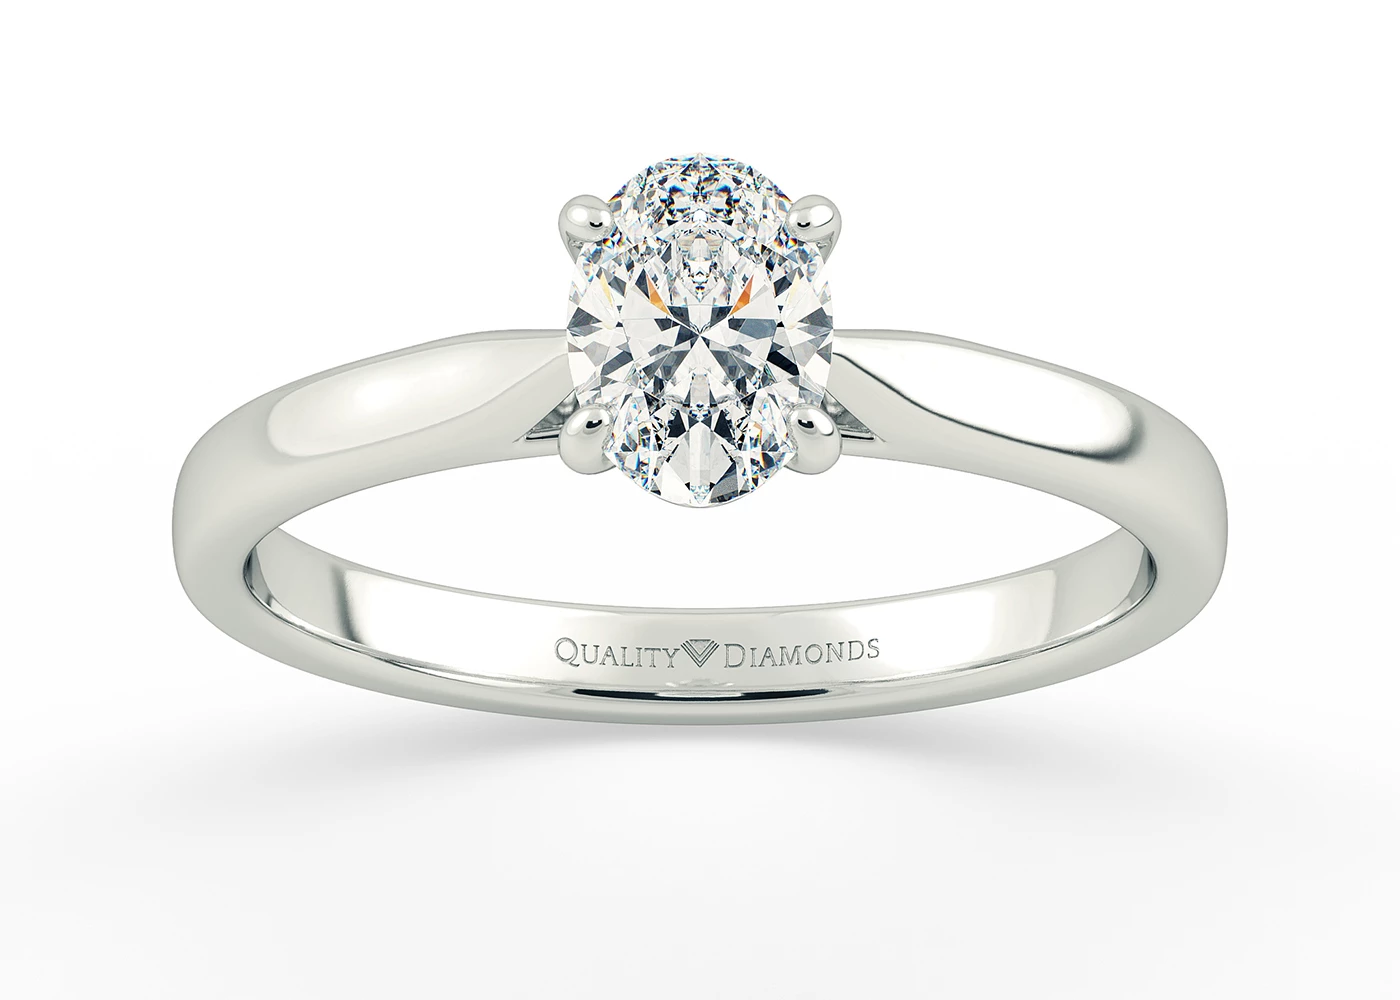 Oval Clara Diamond Ring in 18K White Gold